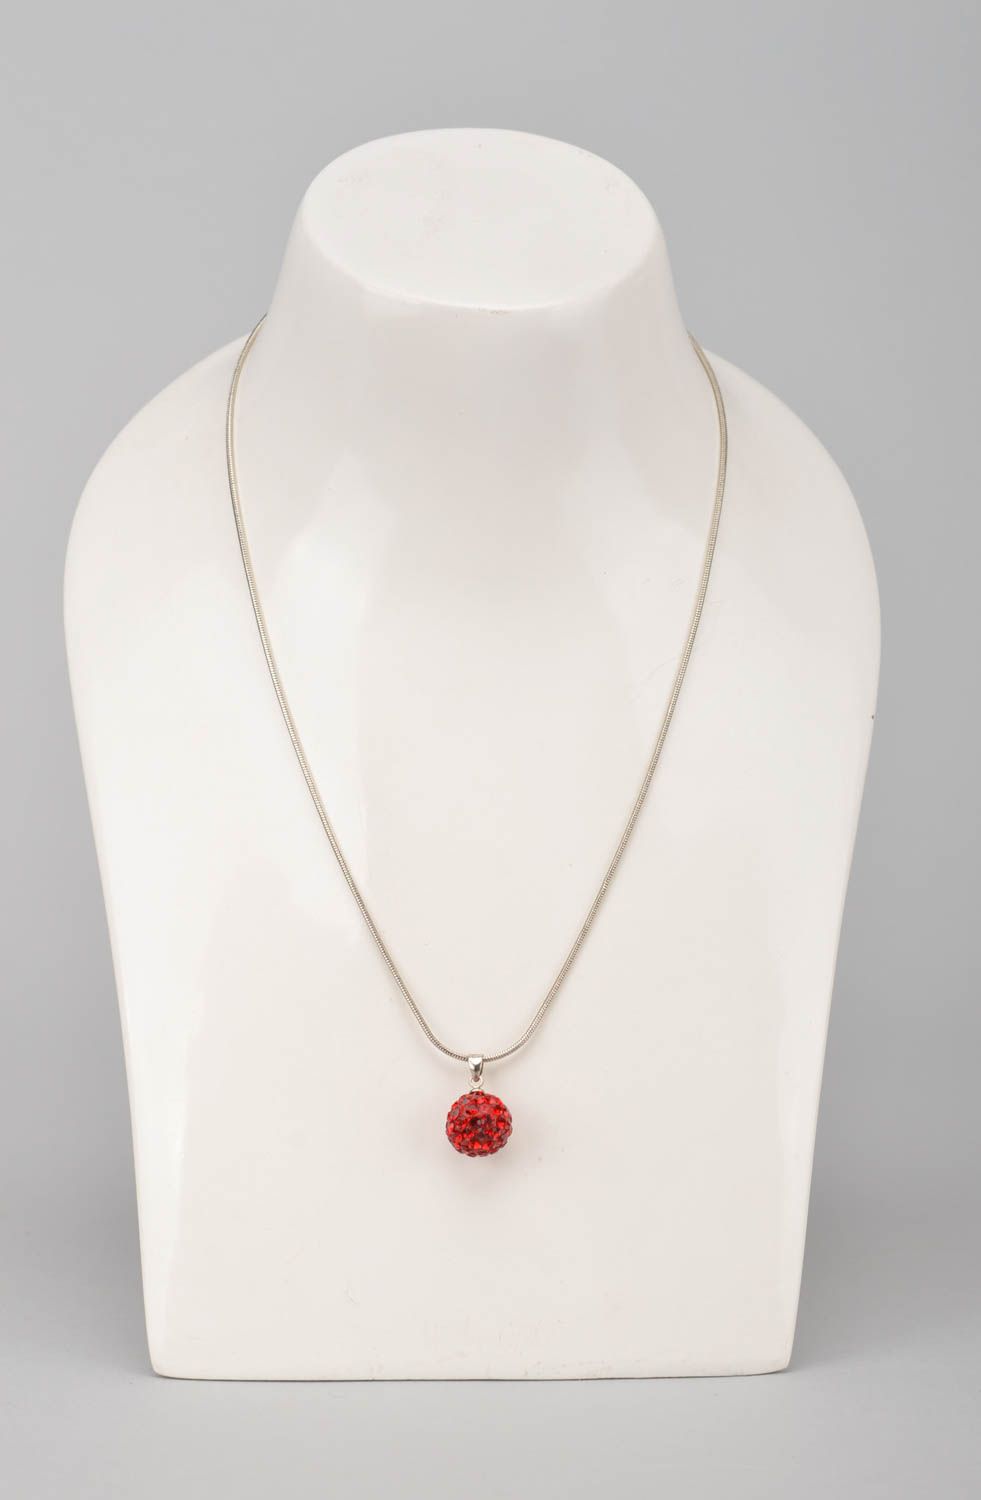 Handmade stylish pendant beautiful designer jewelry red feminine accessories photo 2